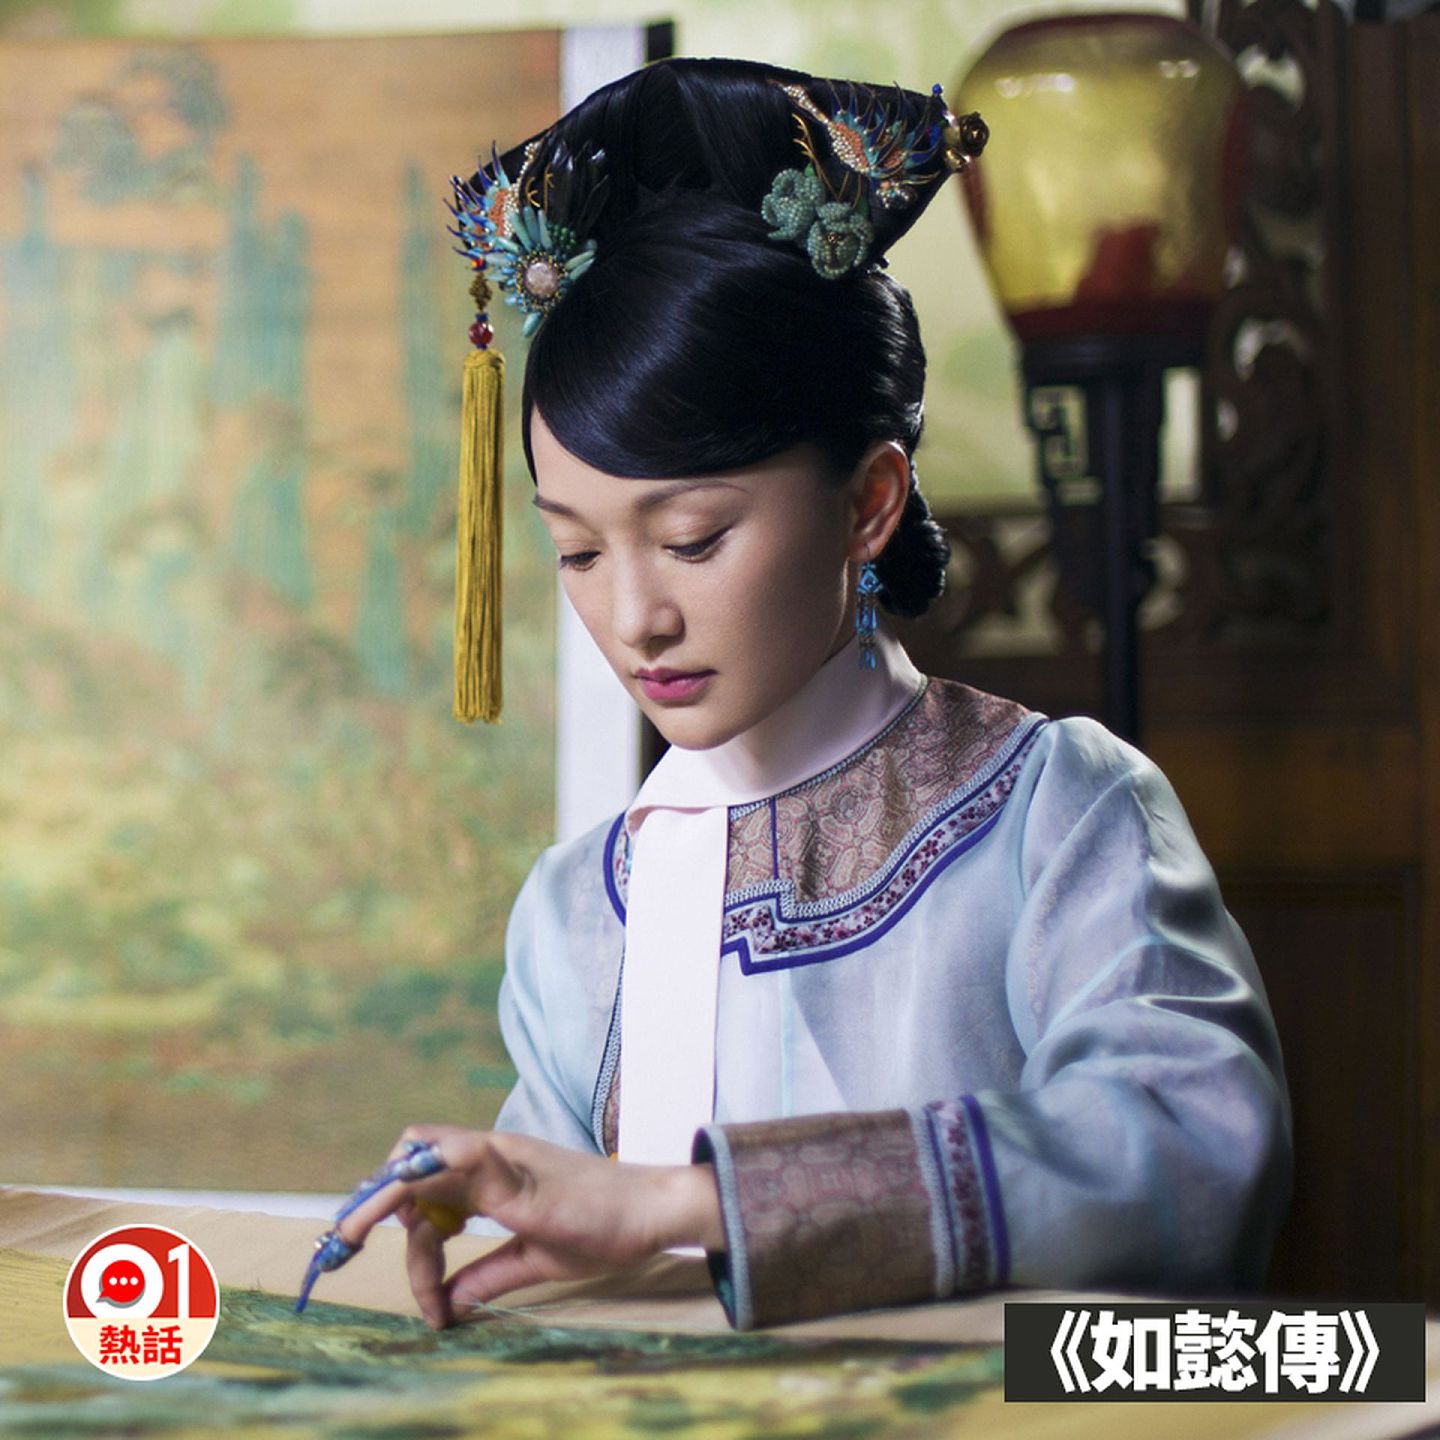 “元清非中国”的历史论述近年在台湾十分流行。图为前些时日热播的清宫剧《如懿传》。（01制图/剧照）